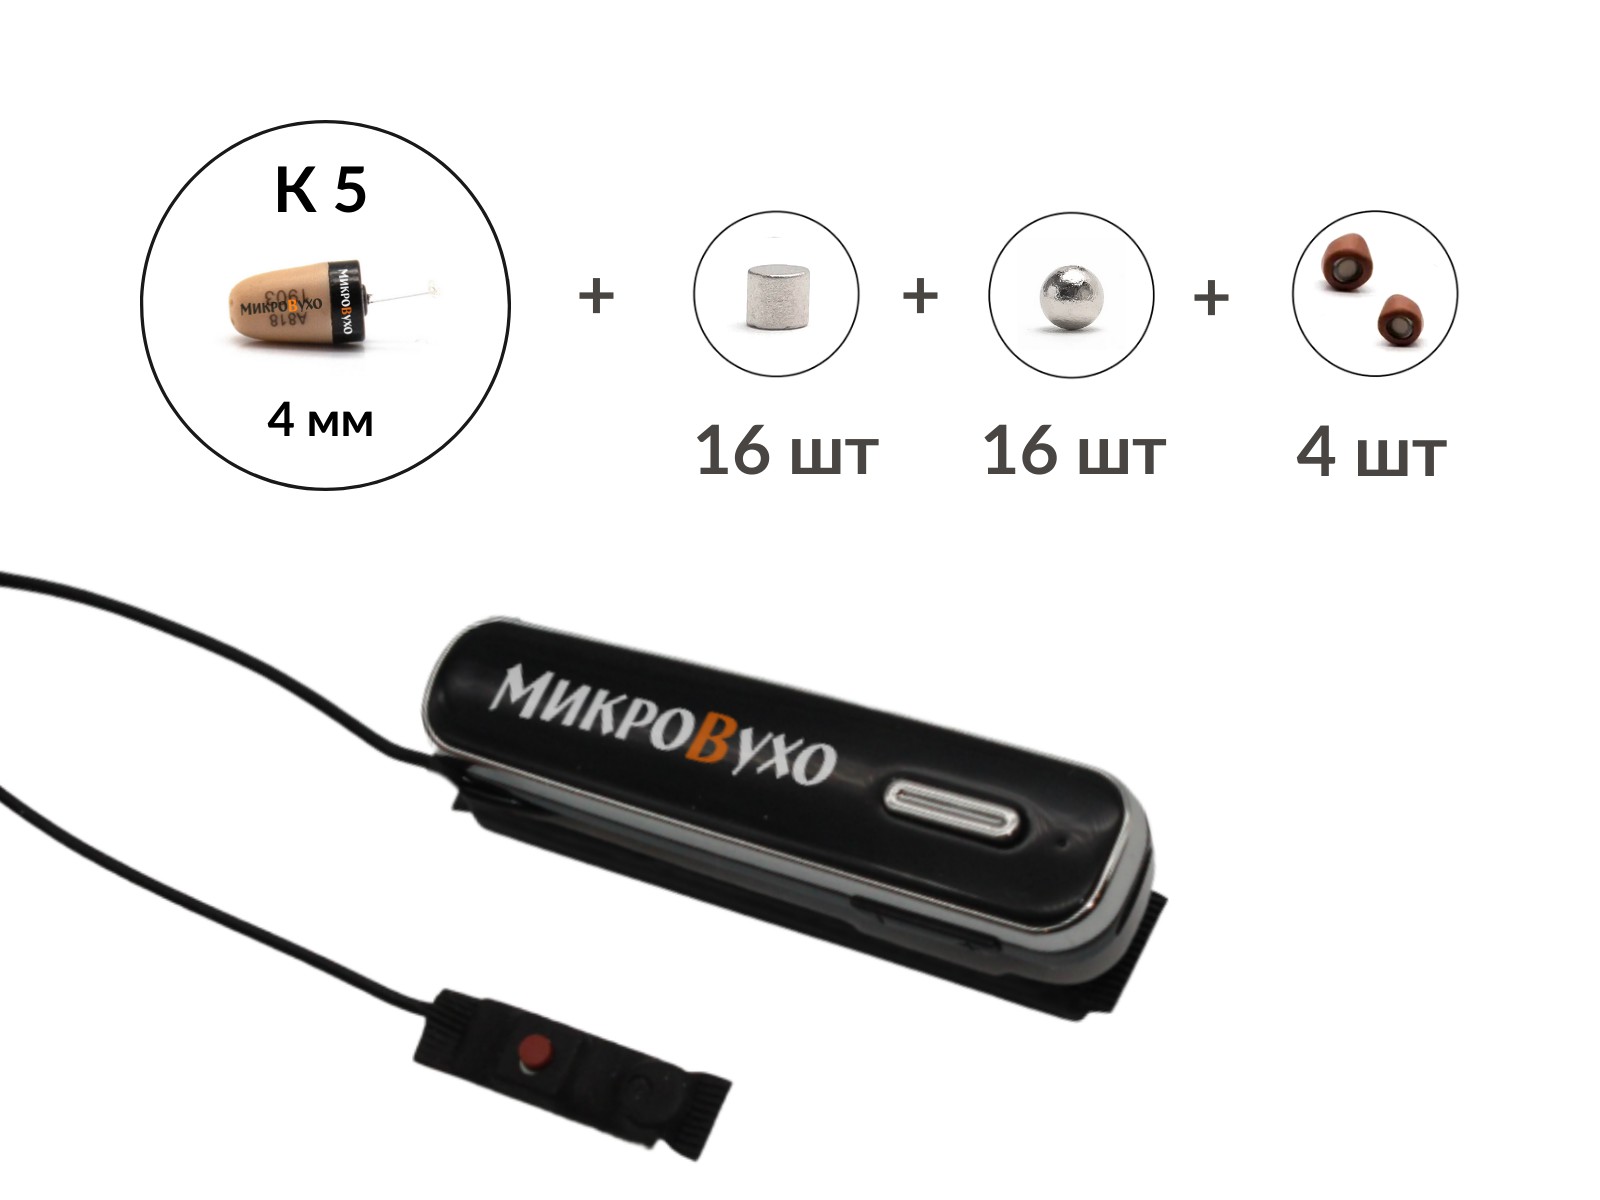 Универсальная гарнитура Bluetooth Box Premier Lite Plus с капсулой K5 4 мм и магнитами 2 мм 2